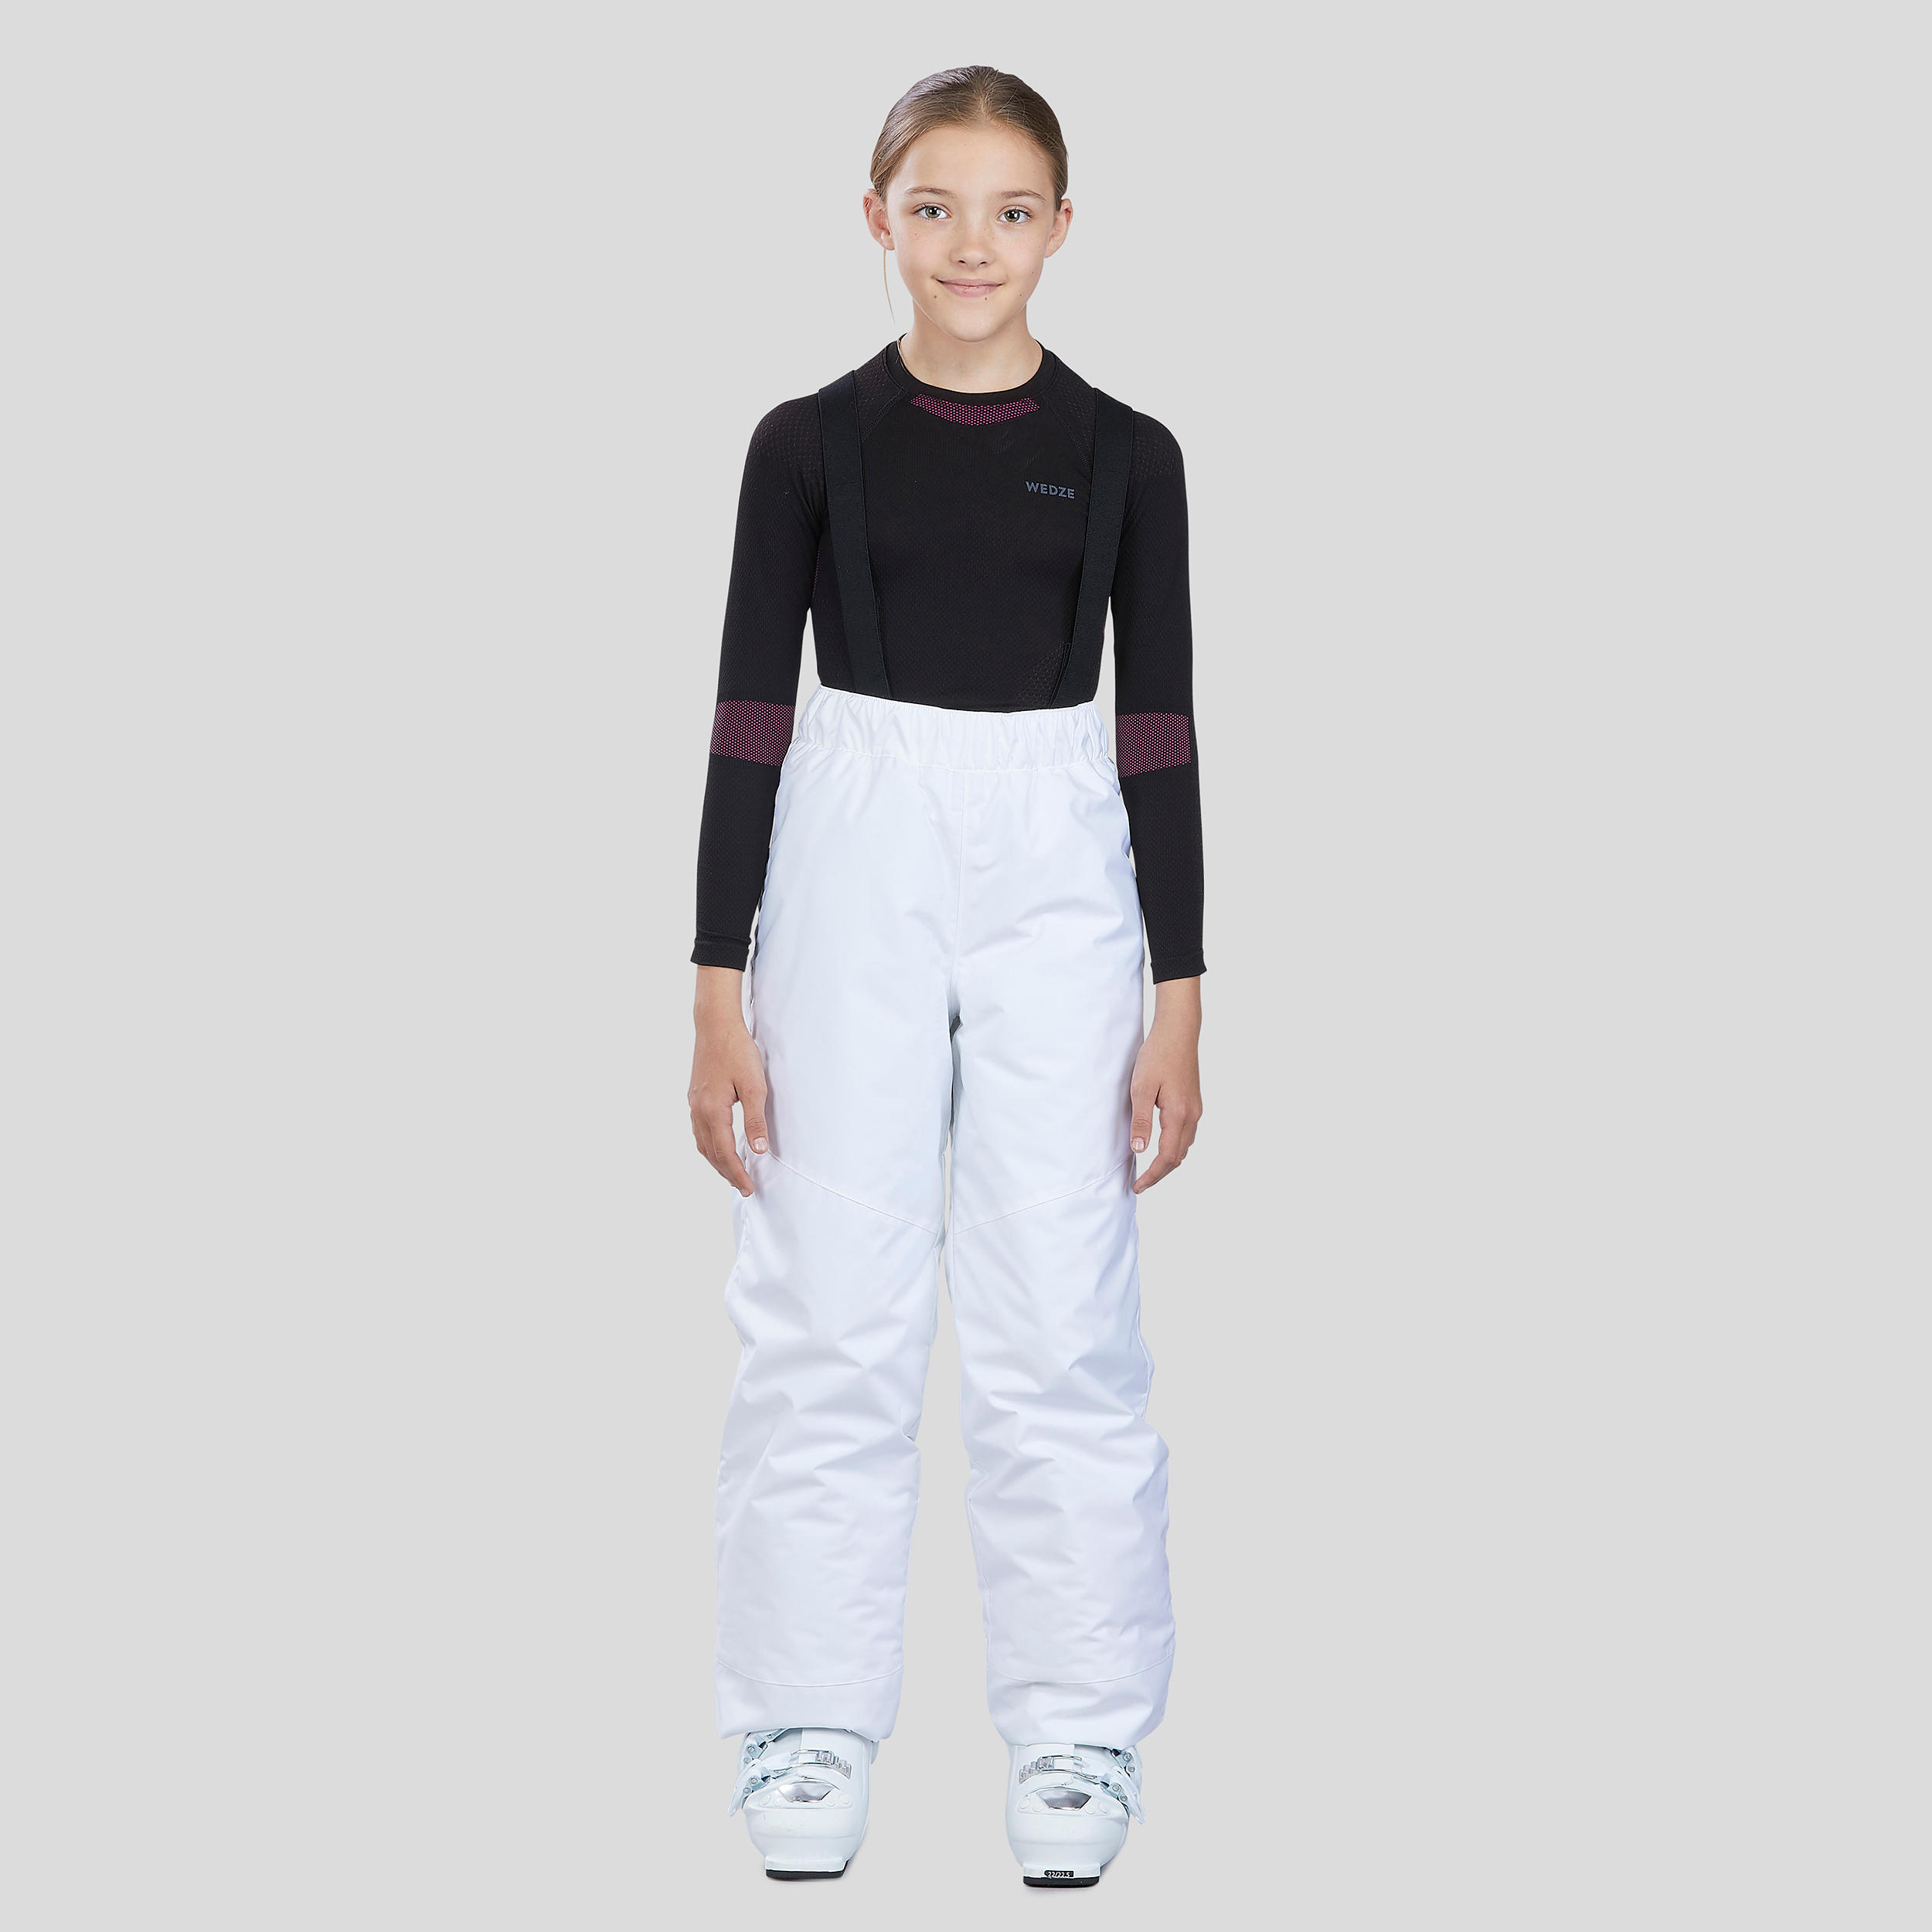 กางเกงขายาวเพื่อการเล่นสกีสำหรับเด็กรุ่น 100 (สีขาว) สกี/สโนว์บอร์ด สกี เสื้อผ้าเด็ก กางเกงกีฬาขายาว